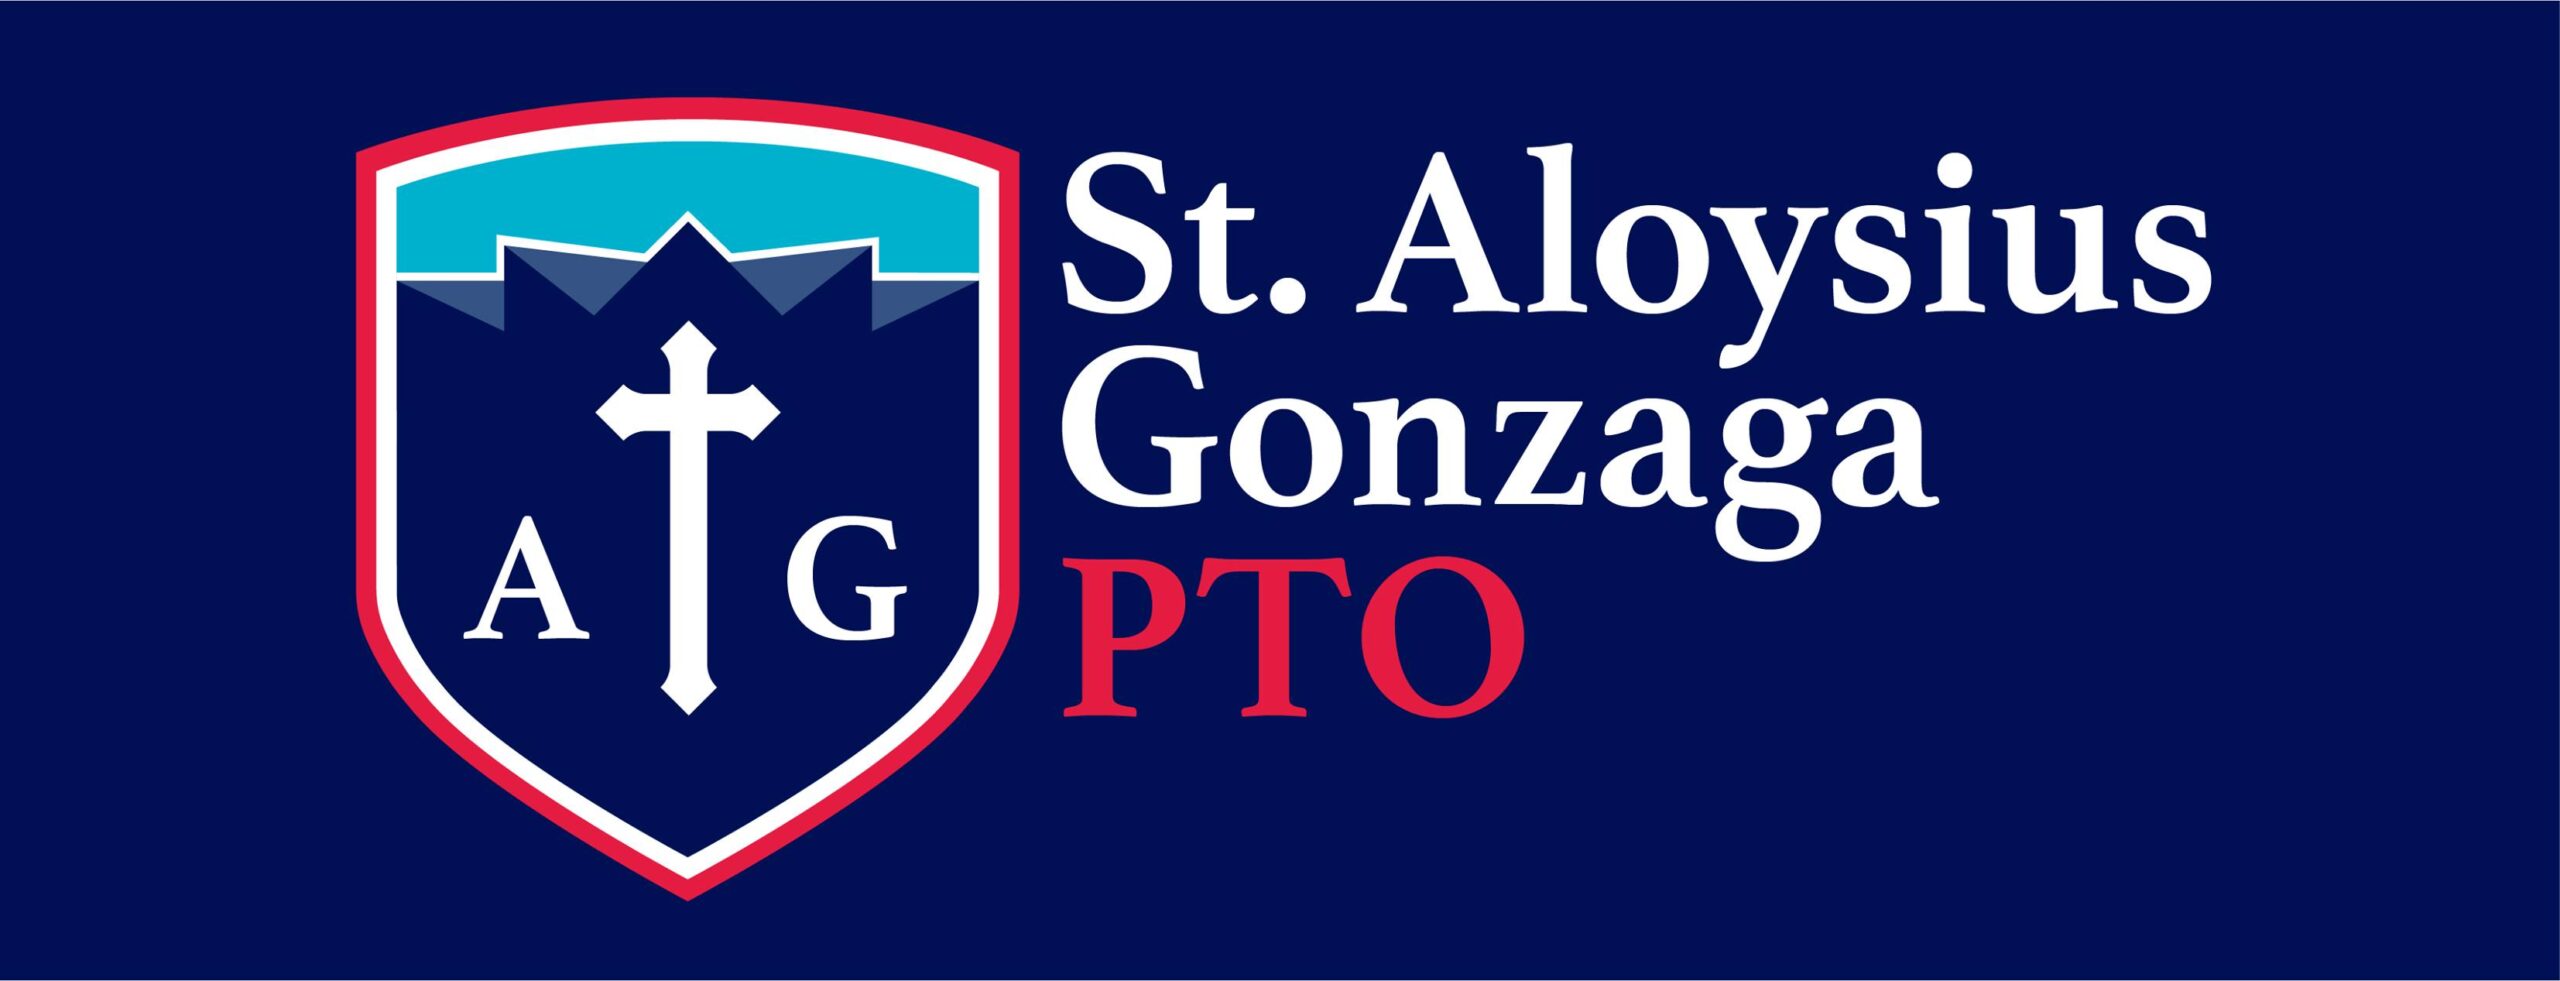 St. Aloysius of Gonzaga School PTO logo - name to the side